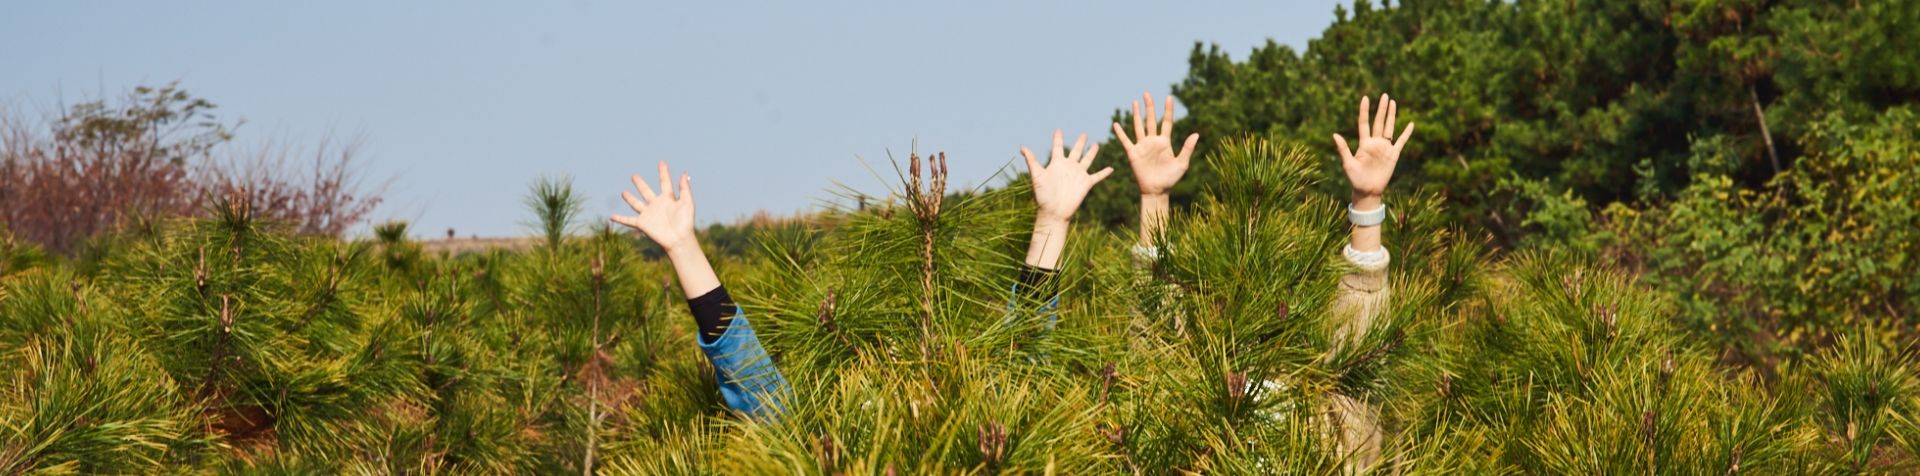 아이오닉 숲 한가운데에서 손을 흔드는 모습.